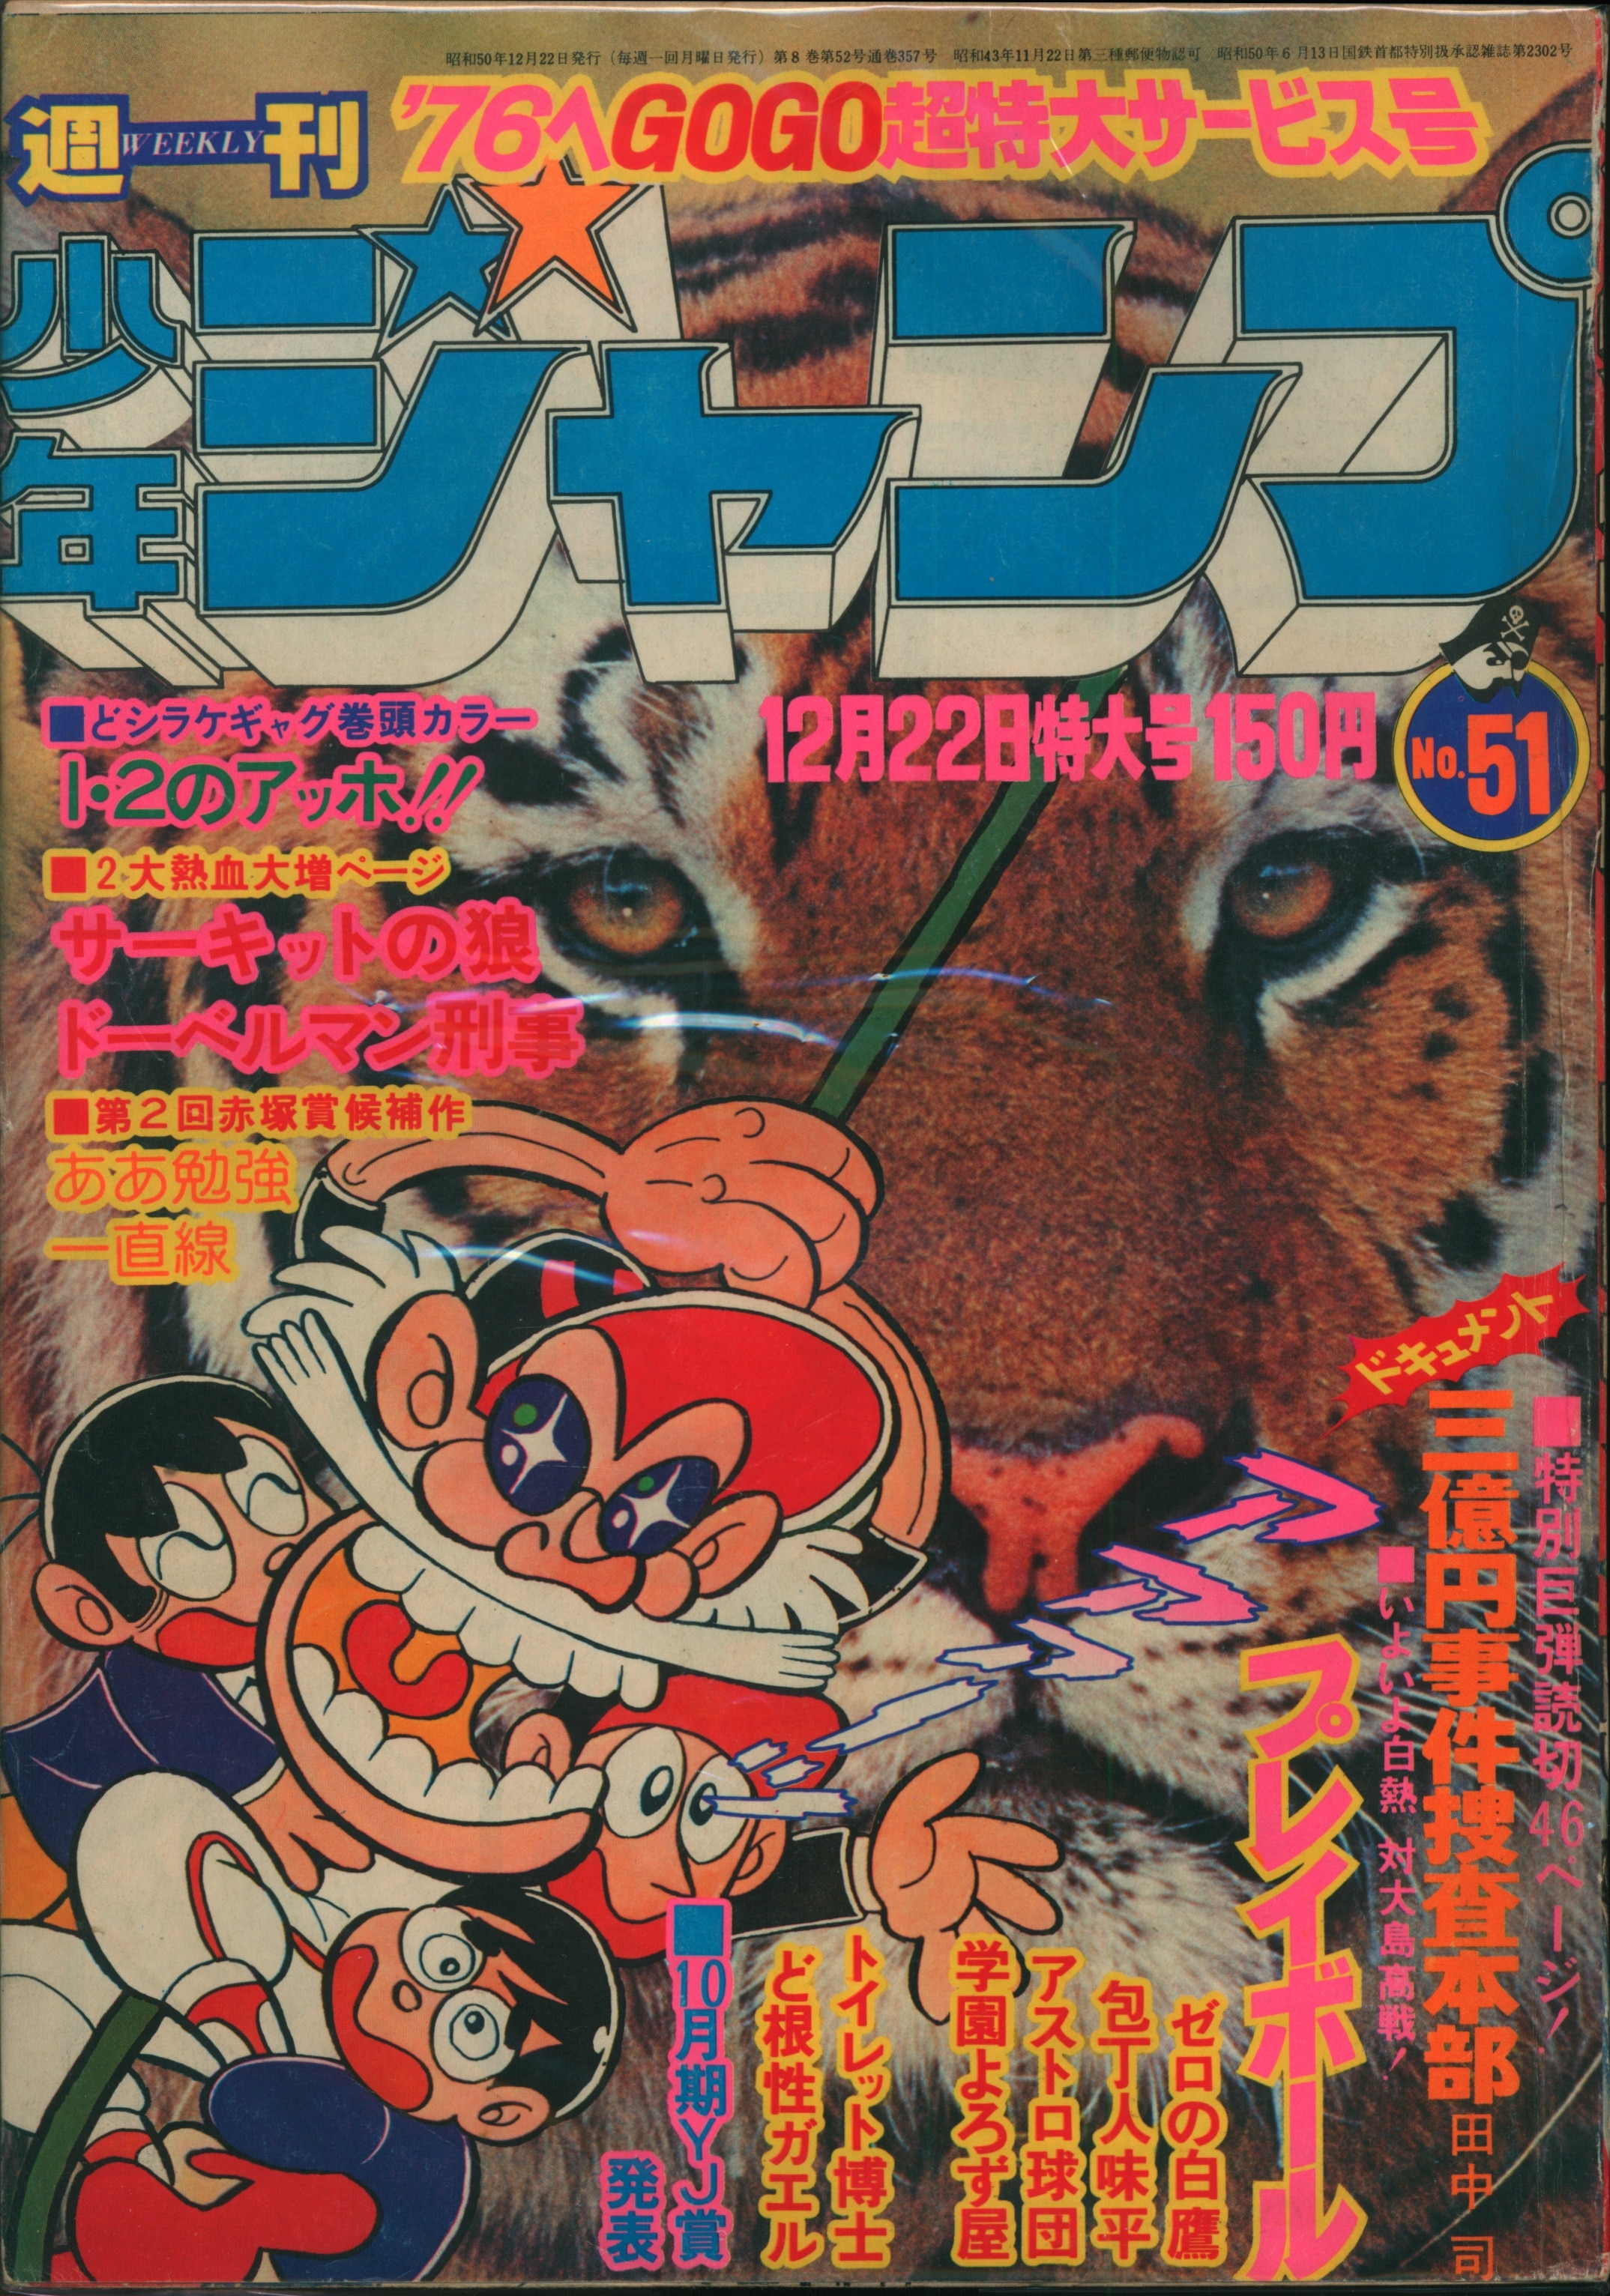 集英社 1975年(昭和50年)の漫画雑誌 週刊少年ジャンプ 1975年(昭和50年